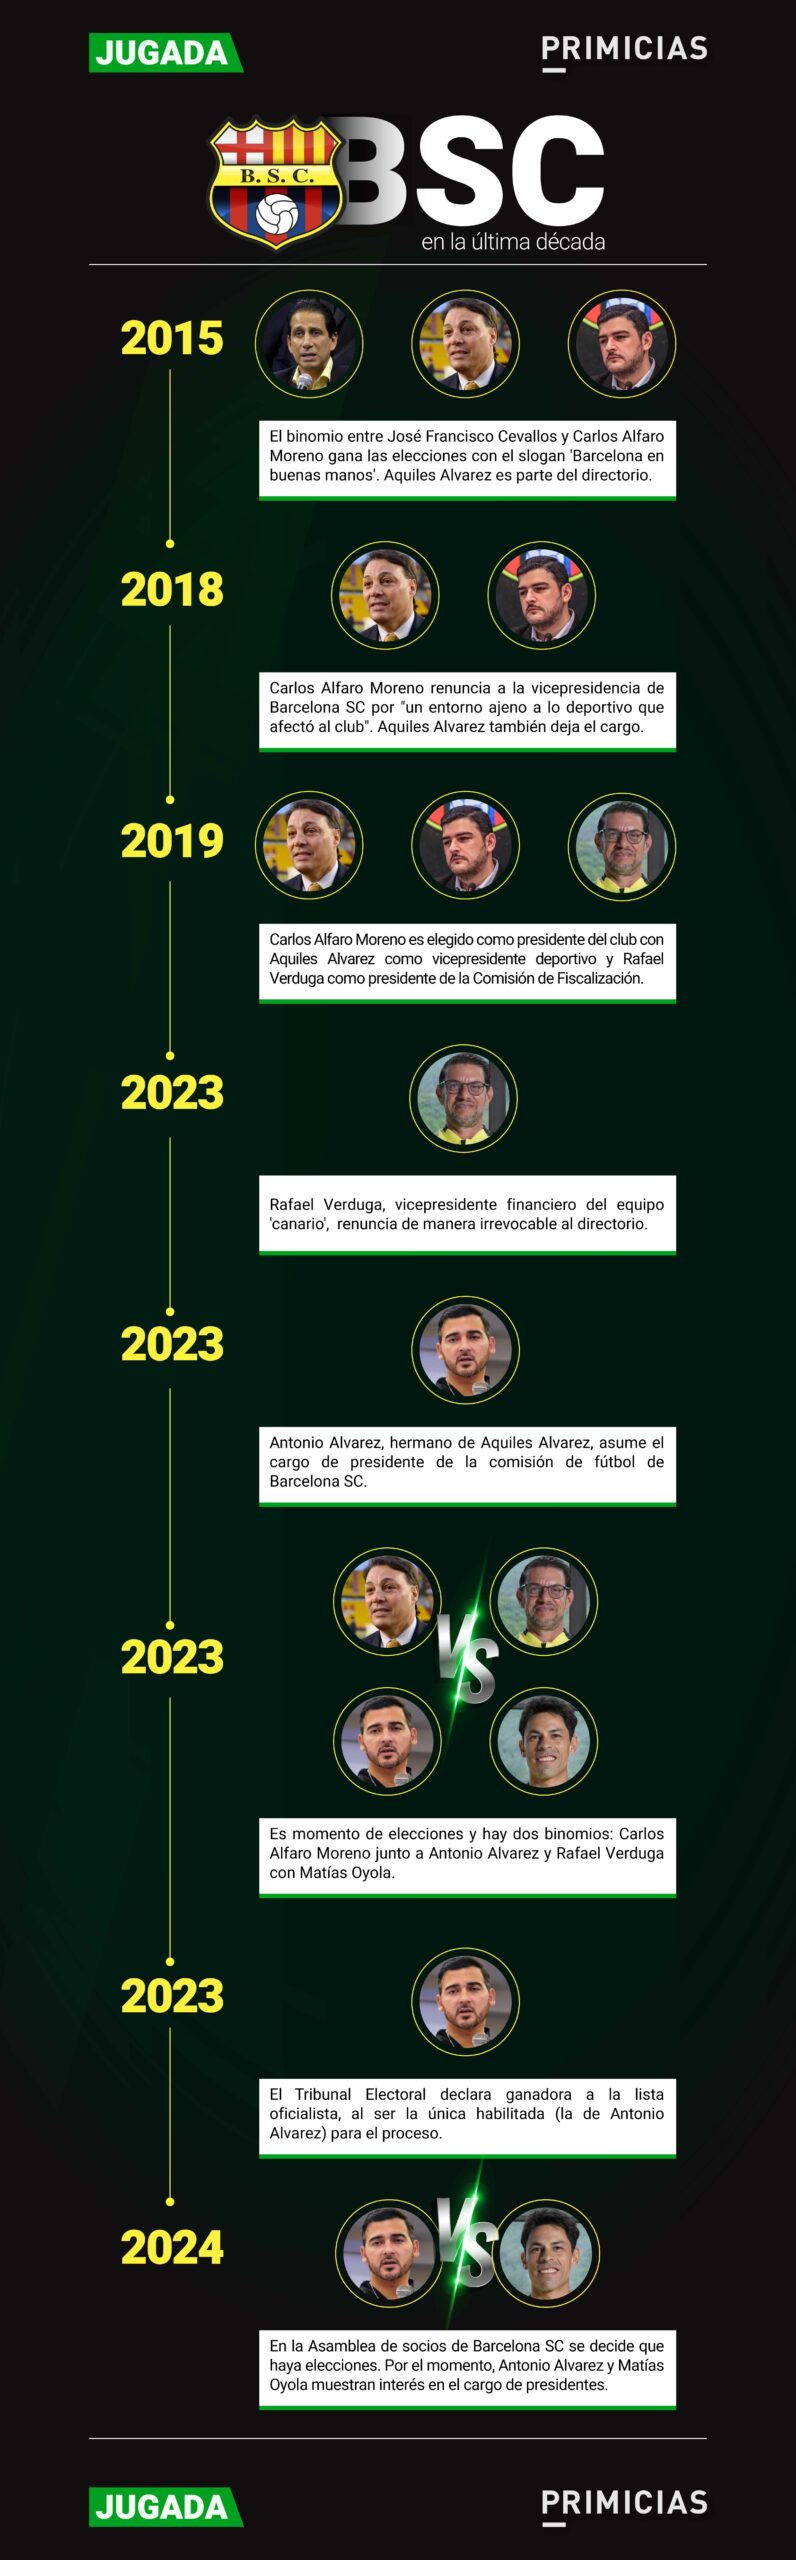 Infografía de las dirigencias de Barcelona SC desde 2015 hasta 2024.